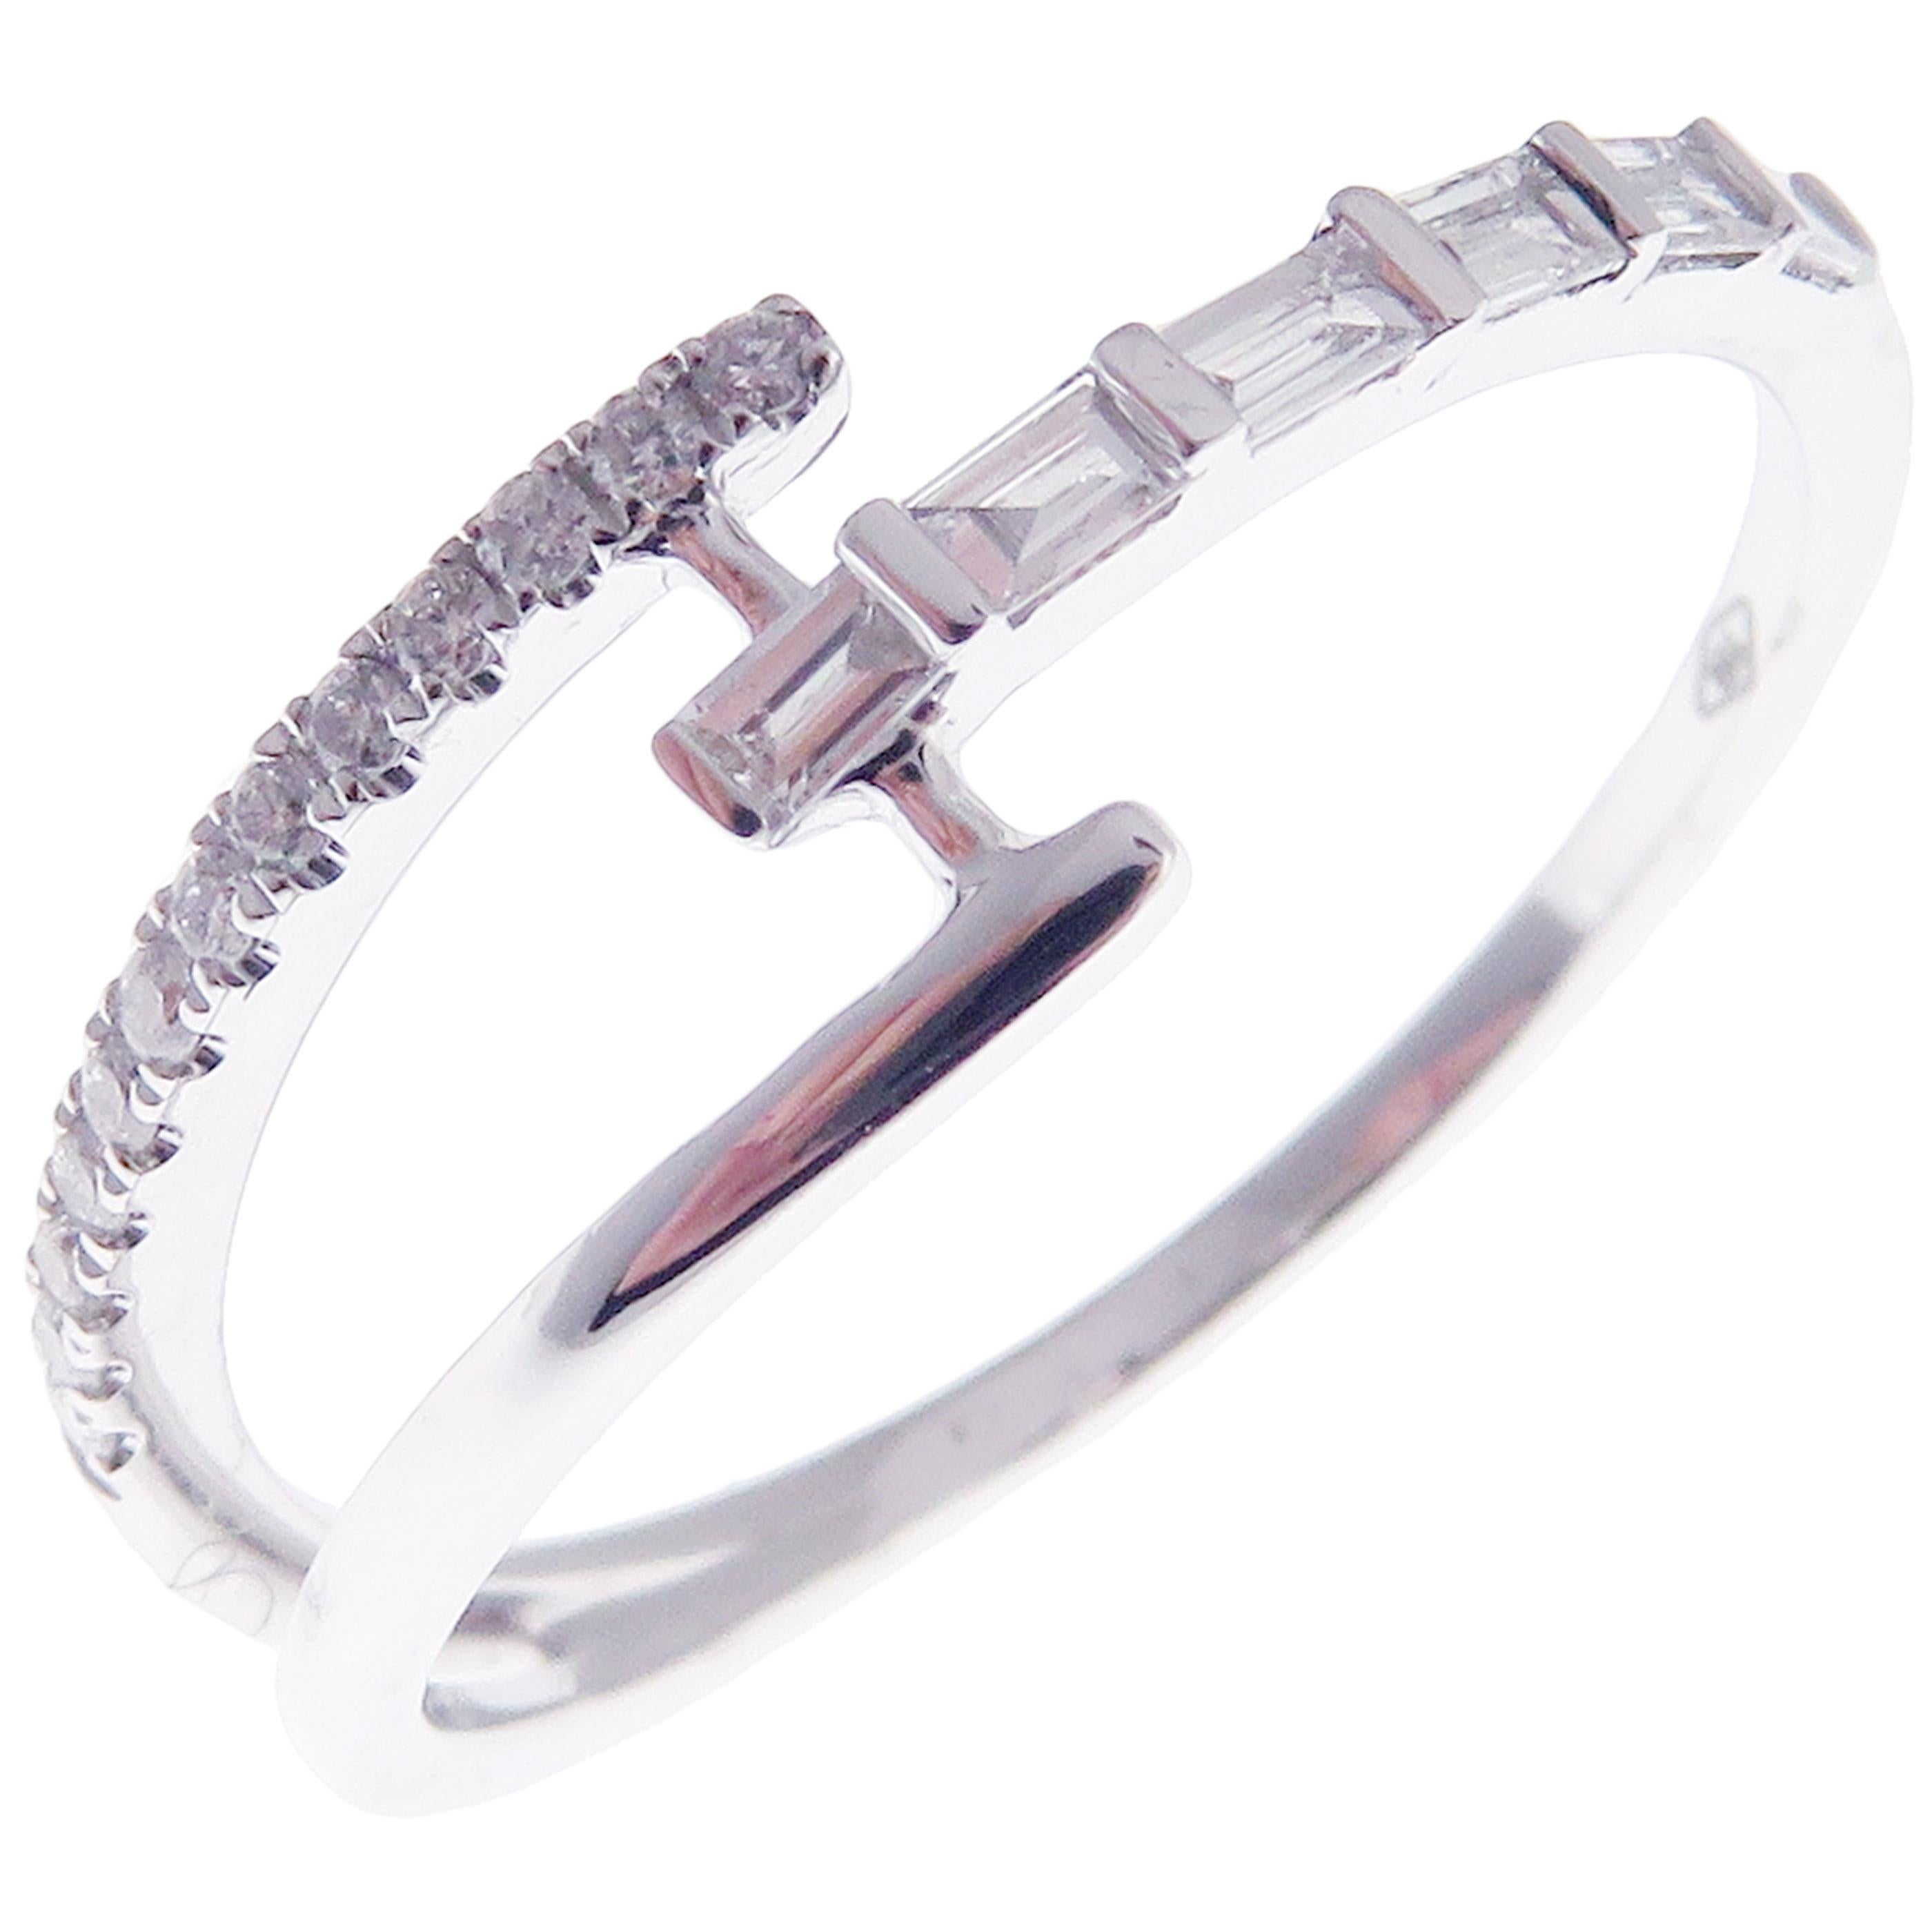 Dieser trendige, mehrschichtige Ring ist aus 18 Karat Weißgold gefertigt und mit 13 runden weißen Diamanten von insgesamt 0,08 Karat und 6 weißen Baguette-Diamanten von insgesamt 0,19 Karat besetzt.
Ungefähres Gesamtgewicht 1,91 Gramm.
Standard